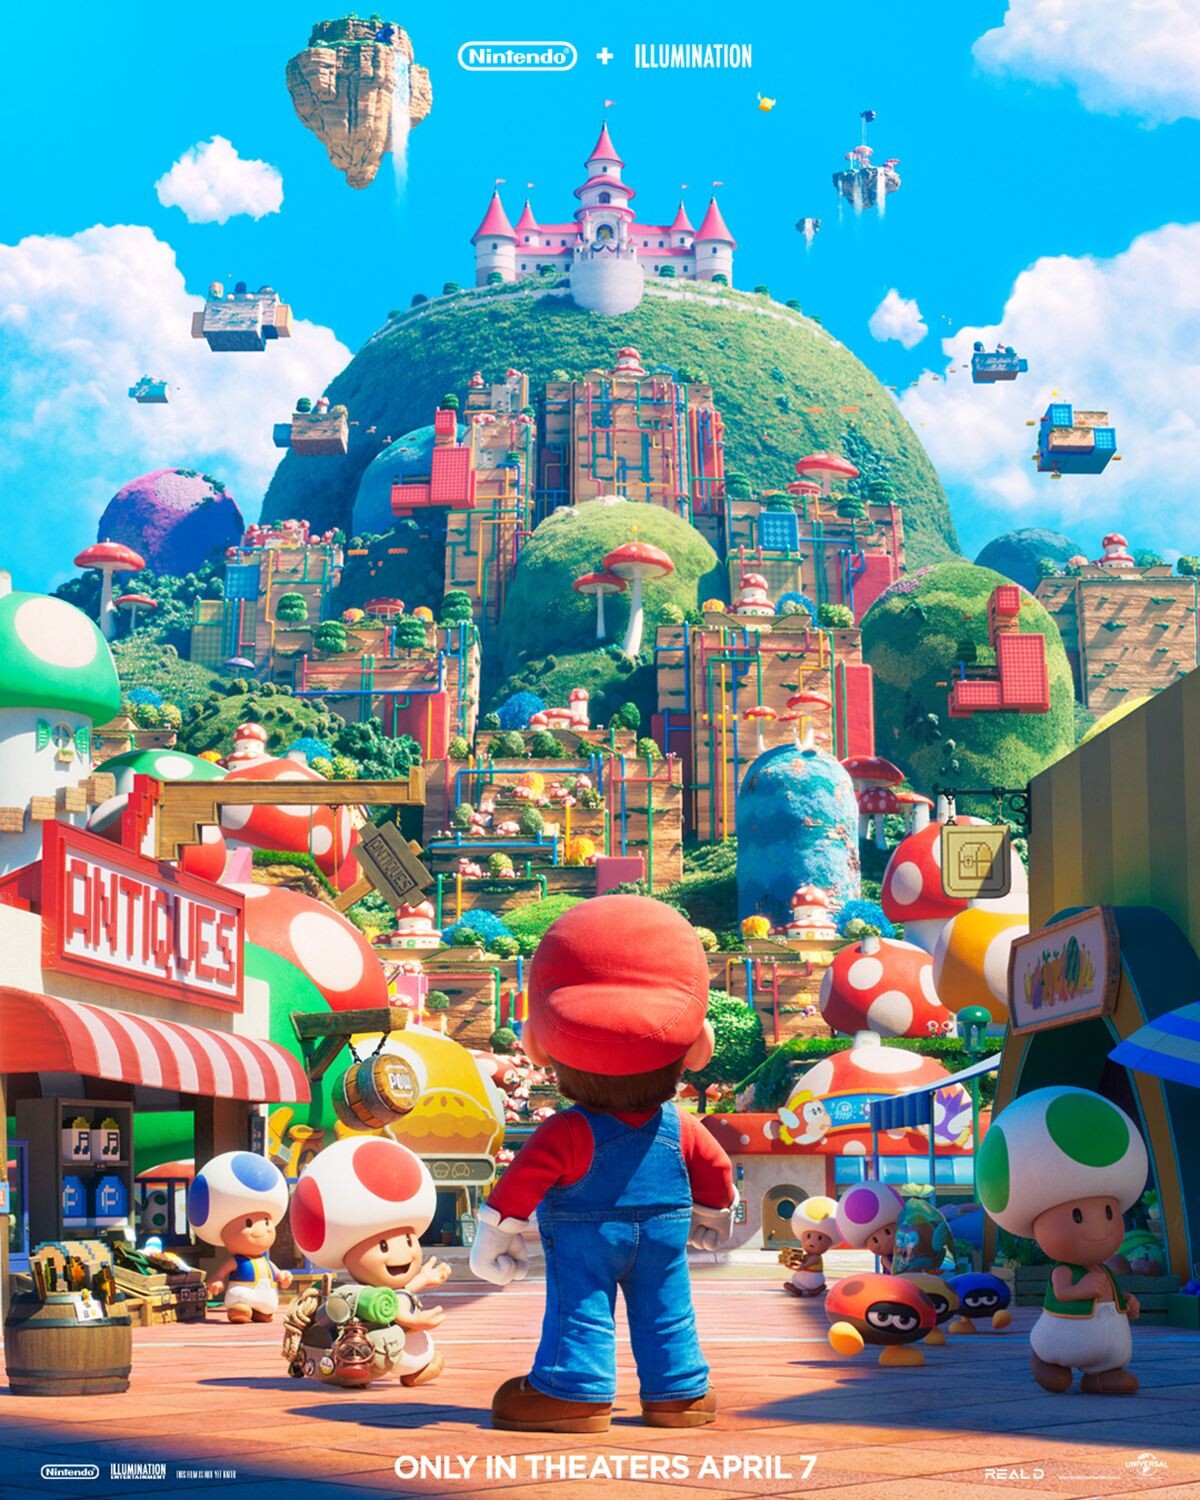 FREE Movie – The Super Mario Bros. Movie